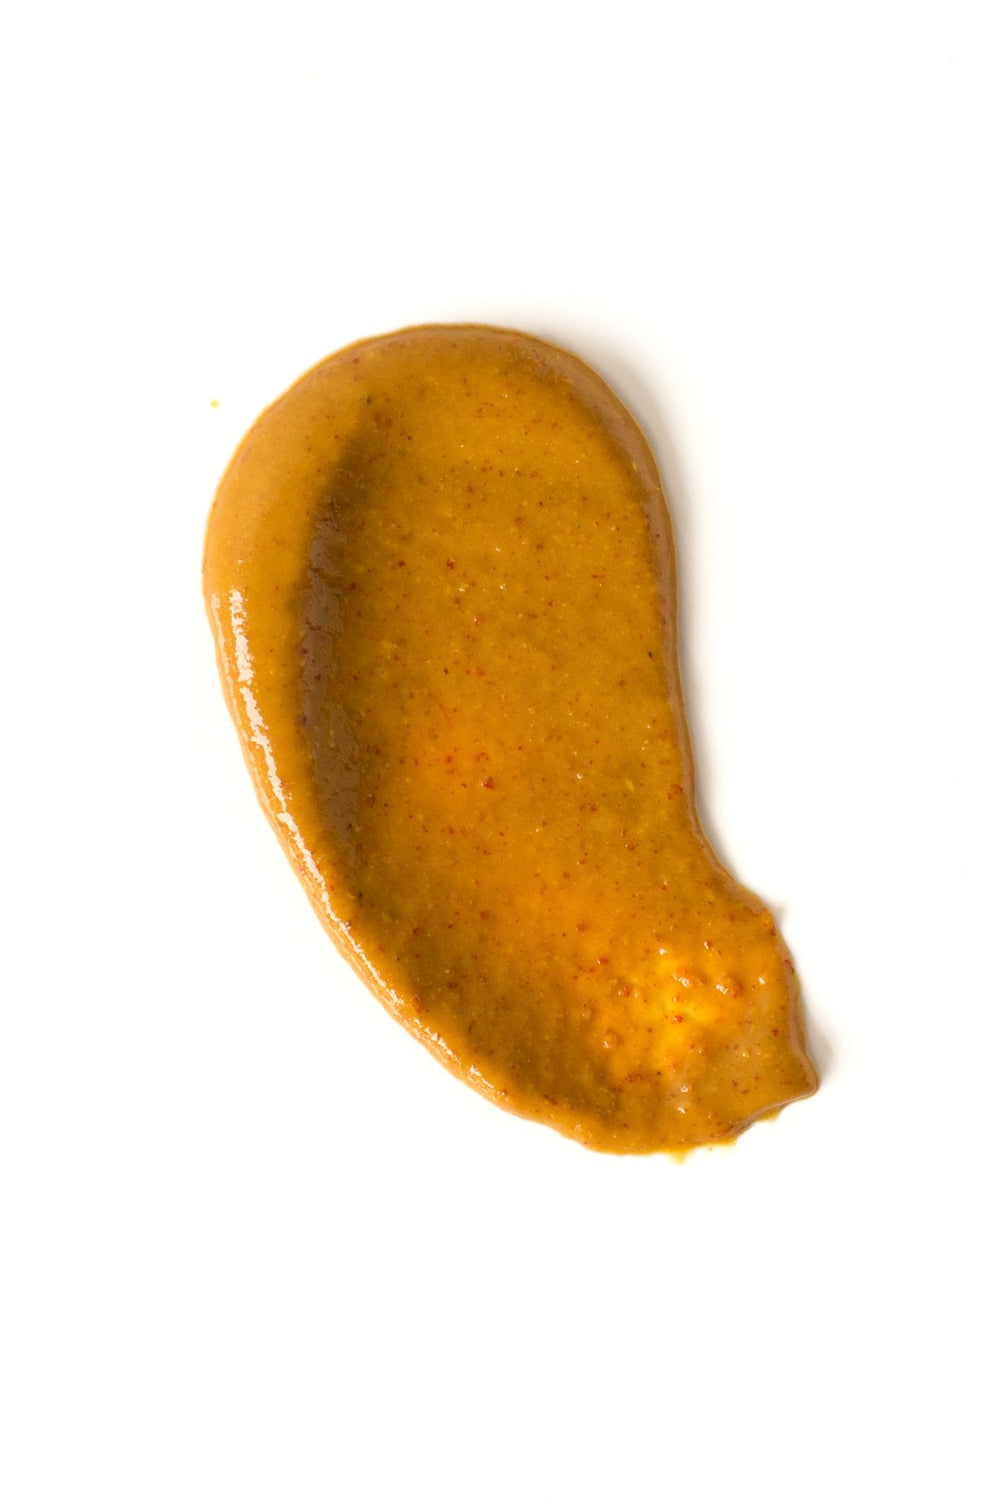 Plochman's Plochman's Chili Dog Mustard-12 Each-12/Case